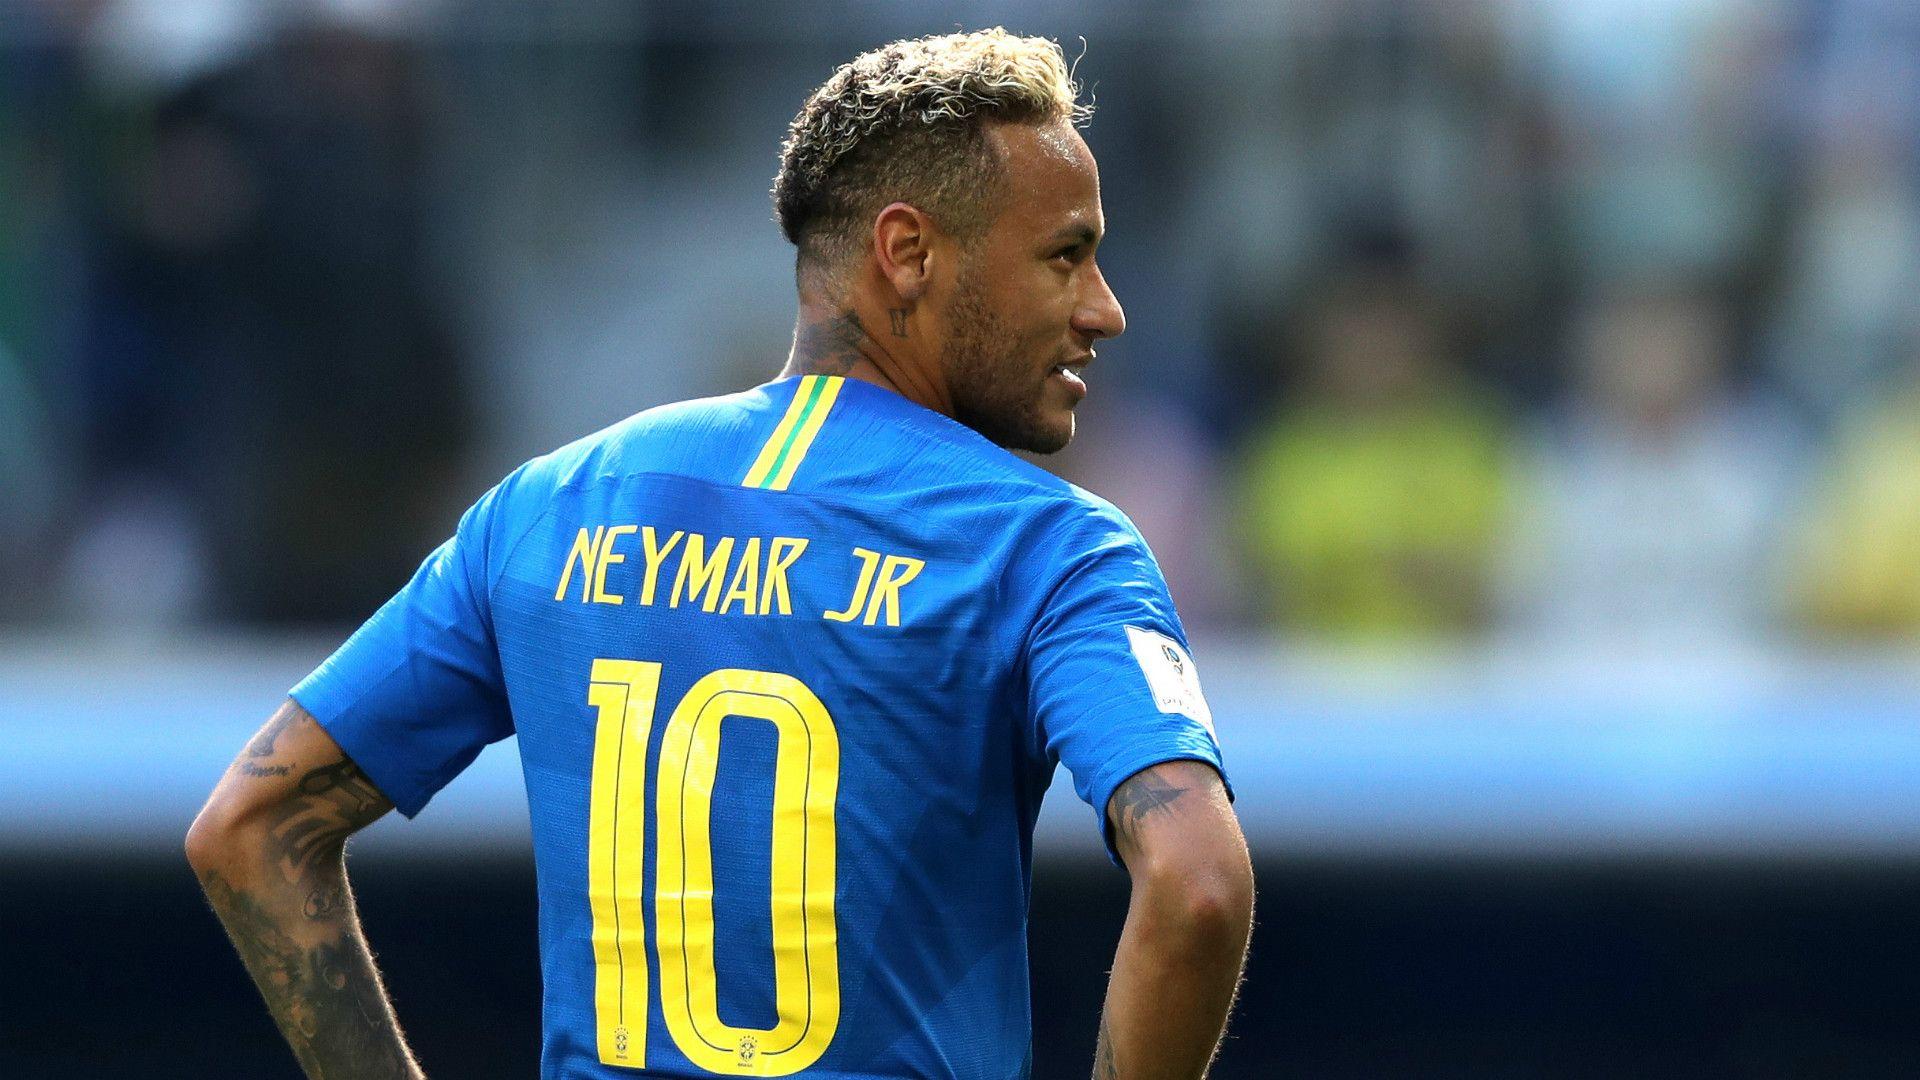 Neymar 2019 Wallpapers - Wallpaper Cave